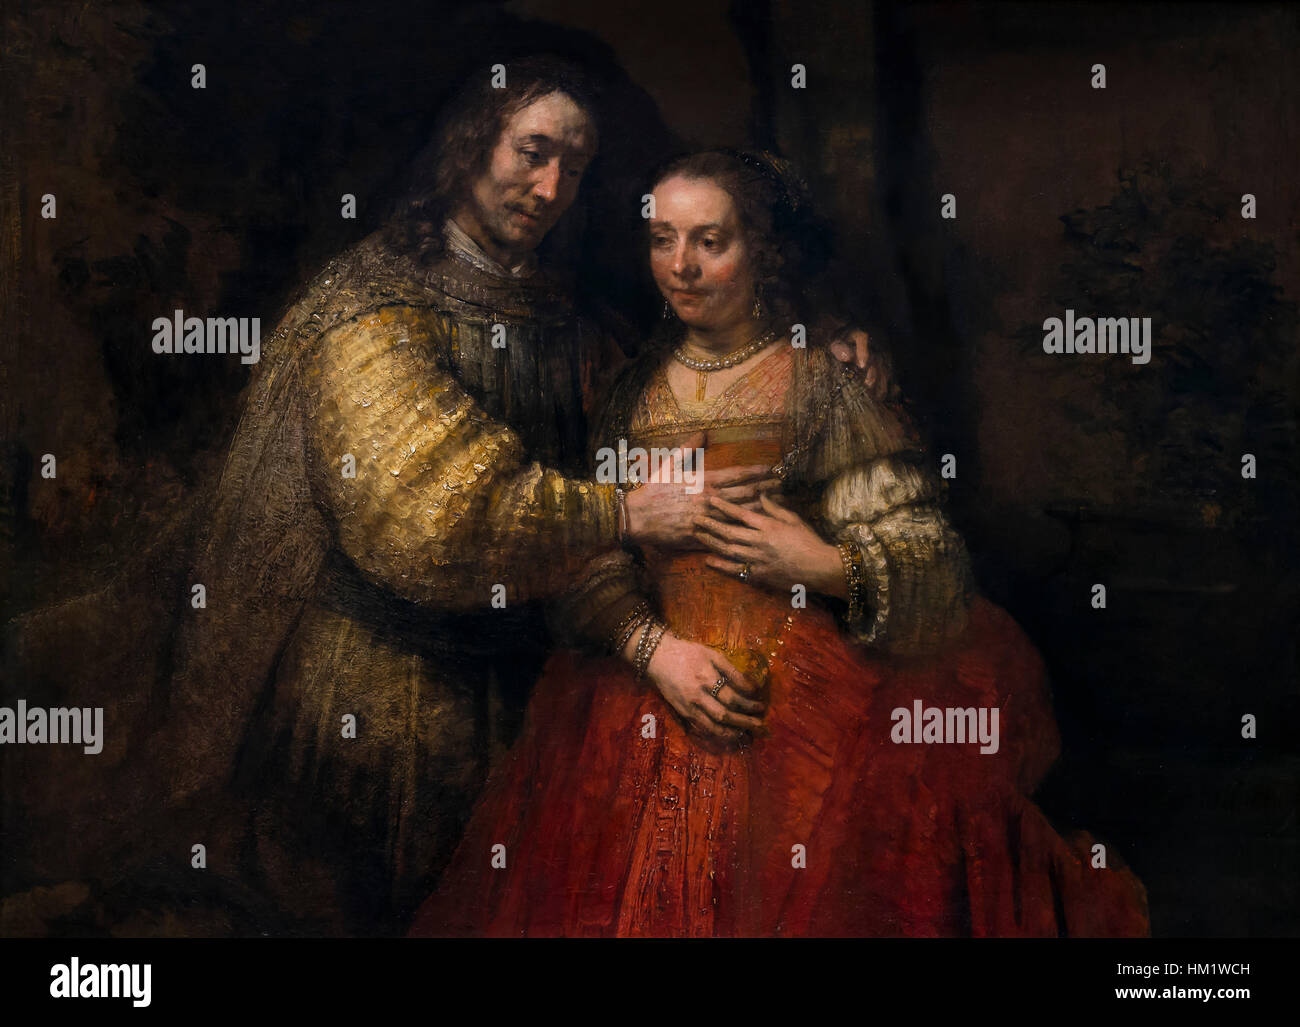 La novia judía, Isaac y Rebeca, de Rembrandt, circa 1665-9, óleo sobre lienzo, Rijksmuseum, Amsterdam, Países Bajos, Europa Foto de stock